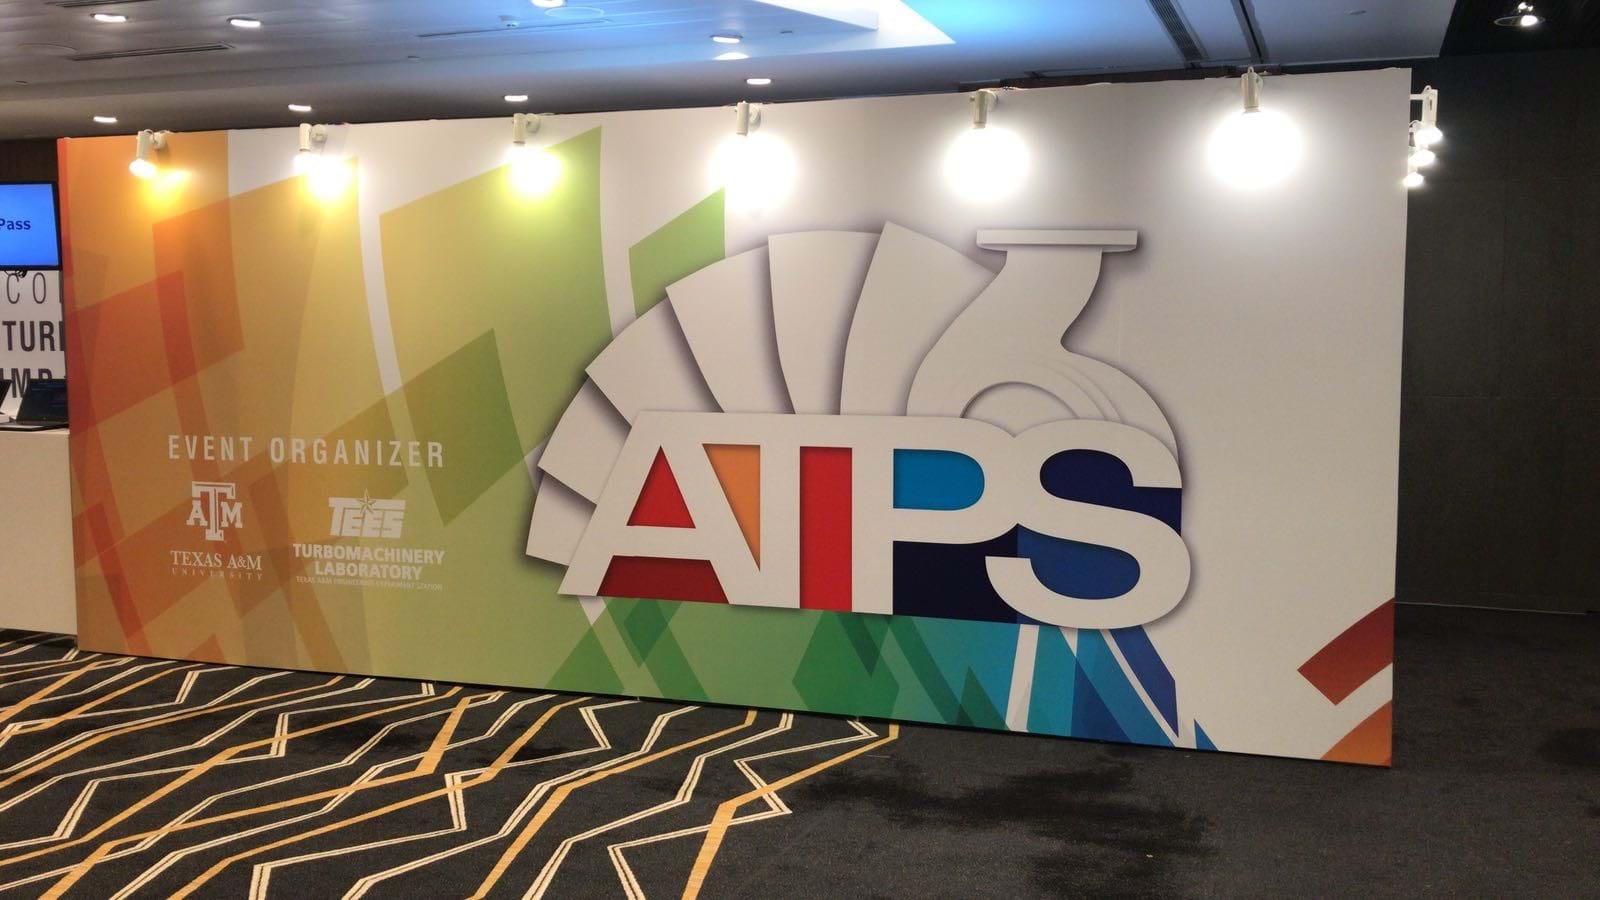 ATPS Singapore Banner